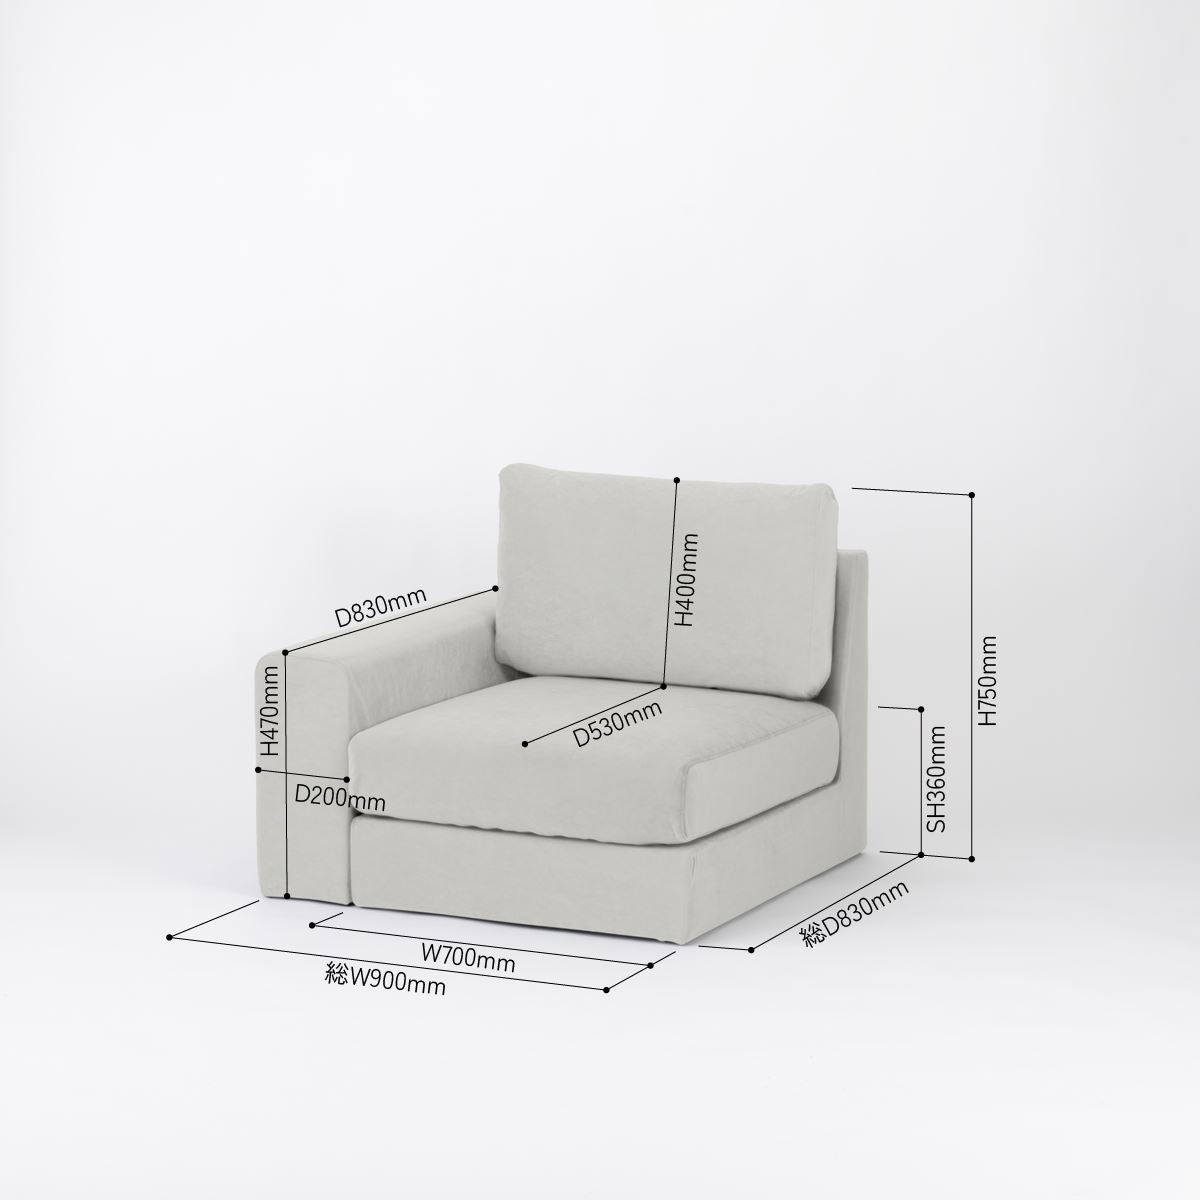 KUUM  Sofa 1 seater One arm - Full Cover / クーム ソファ